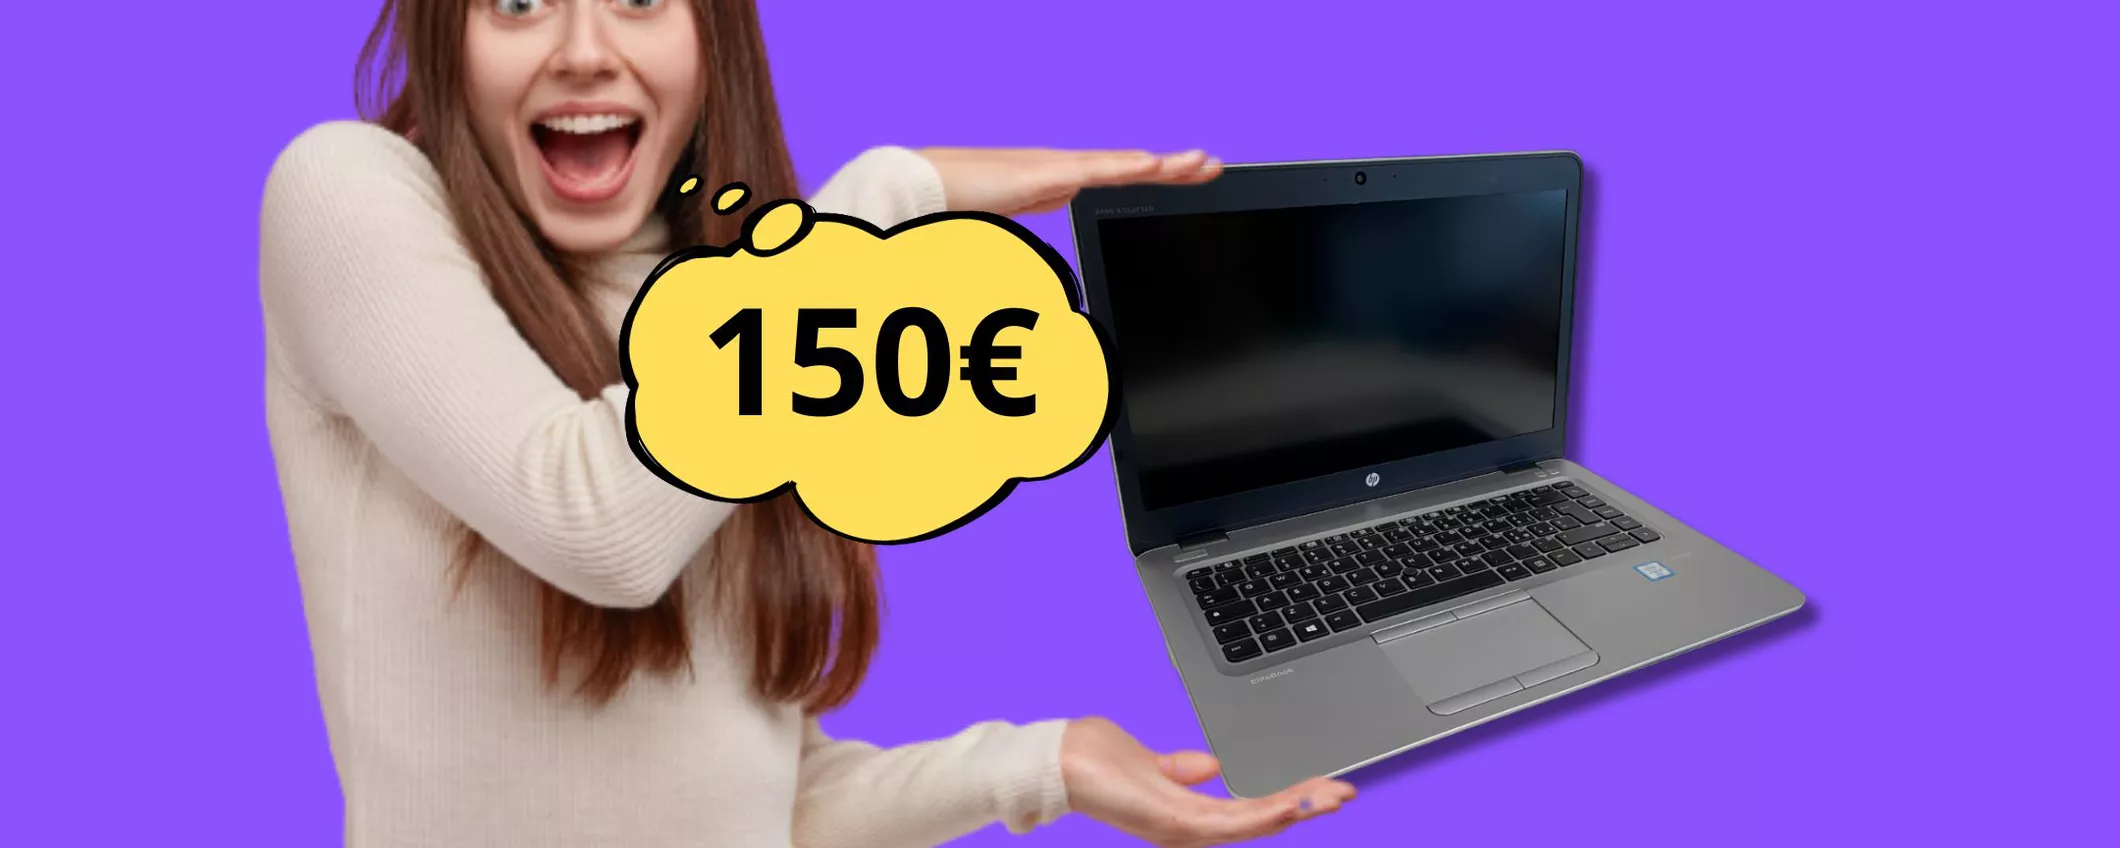 Notebook HP ricondizionato a soli 150 euro: risparmia e aiuta l'ambiente